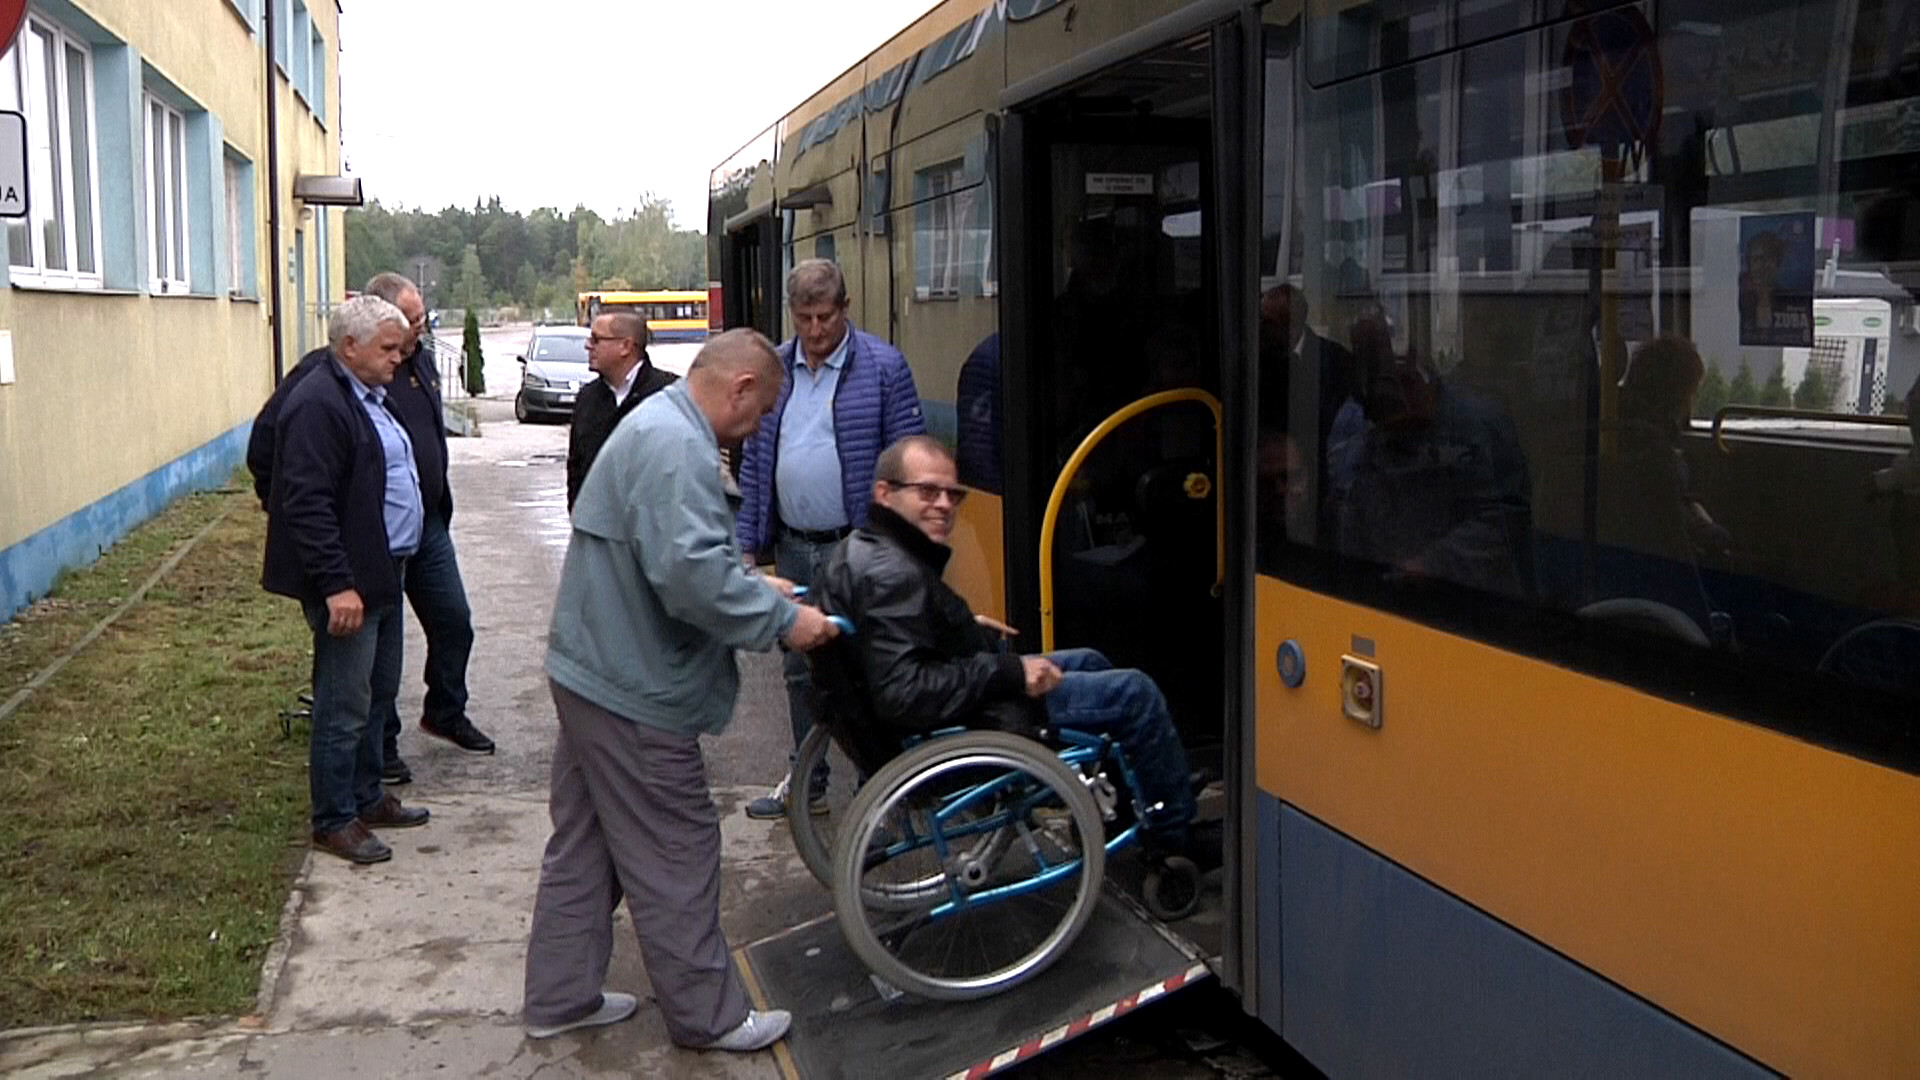 osoby niepełnosprawne wsiadają do autobusu images